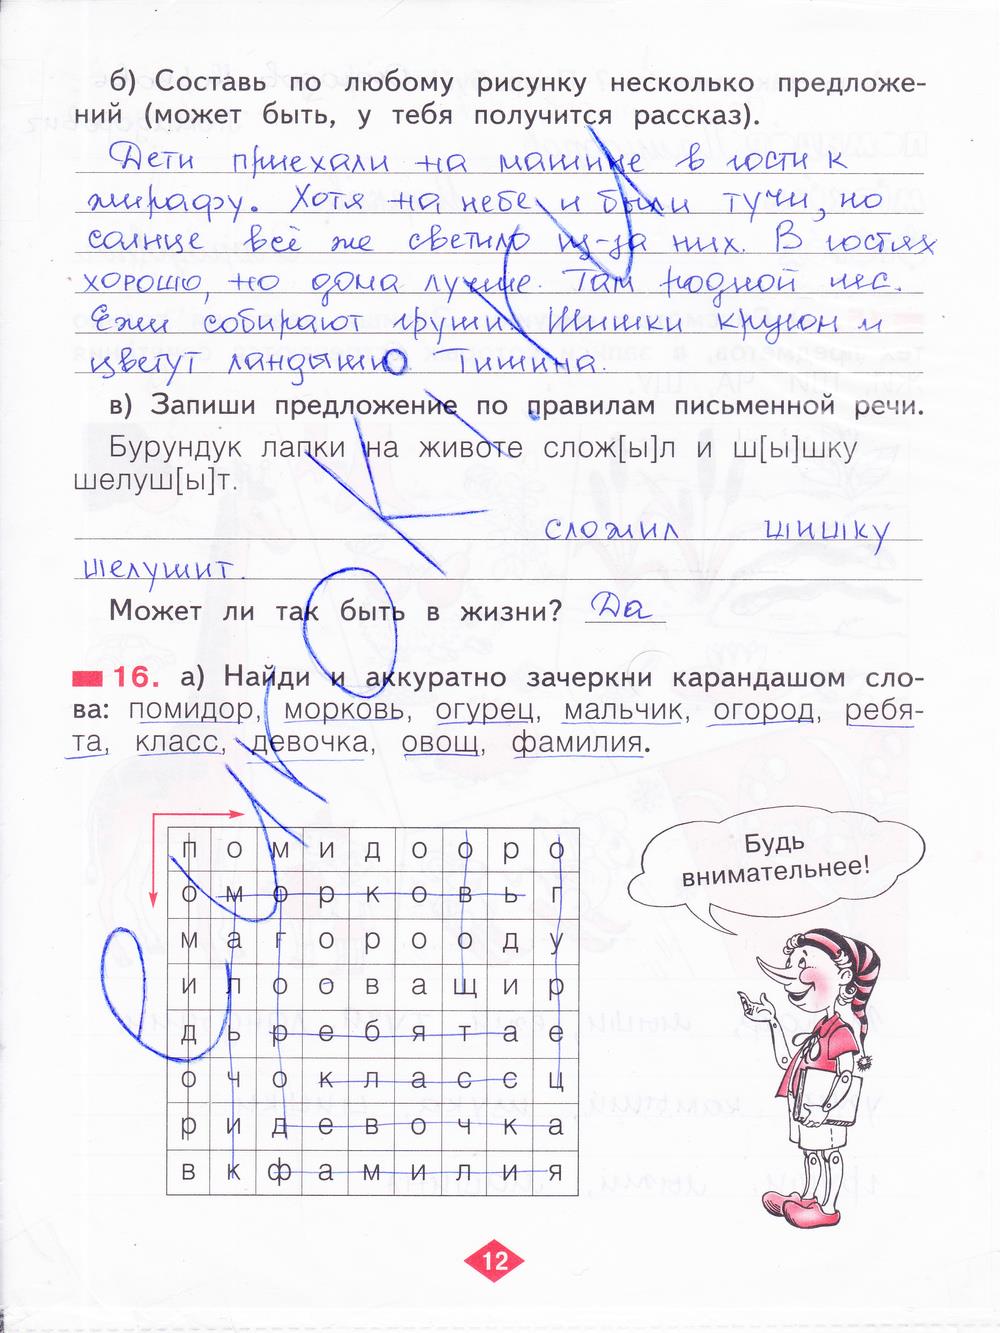 гдз 2 класс рабочая тетрадь часть 1 страница 12 русский язык Яковлева